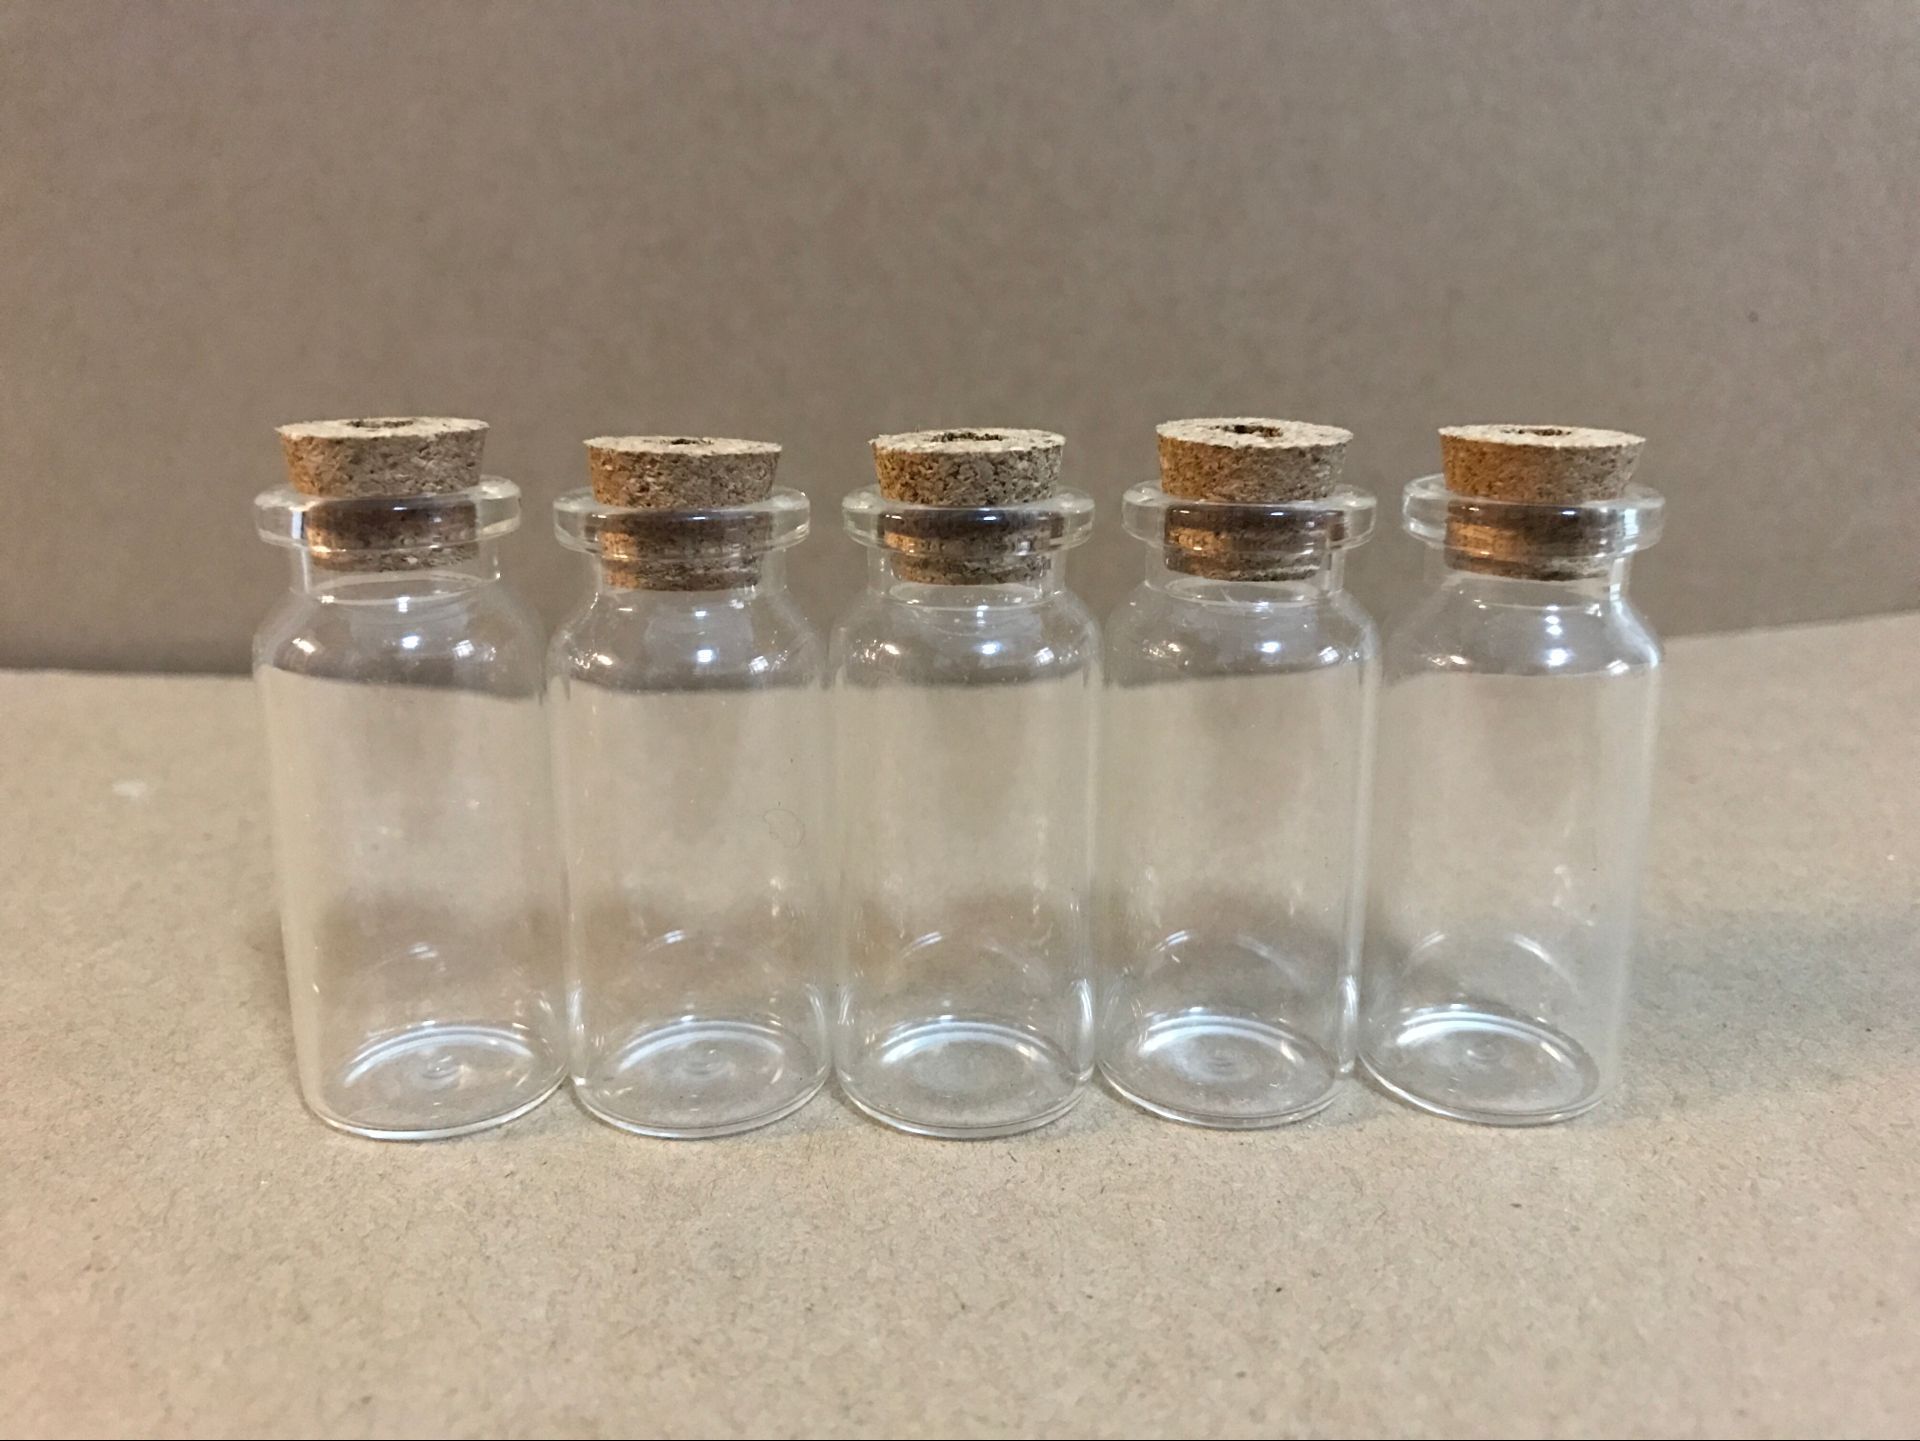 厂家直销10ml西林瓶 灯串玻璃瓶 许愿 漂流 管制瓶可批发定制 管制瓶 漂流瓶  灯饰瓶